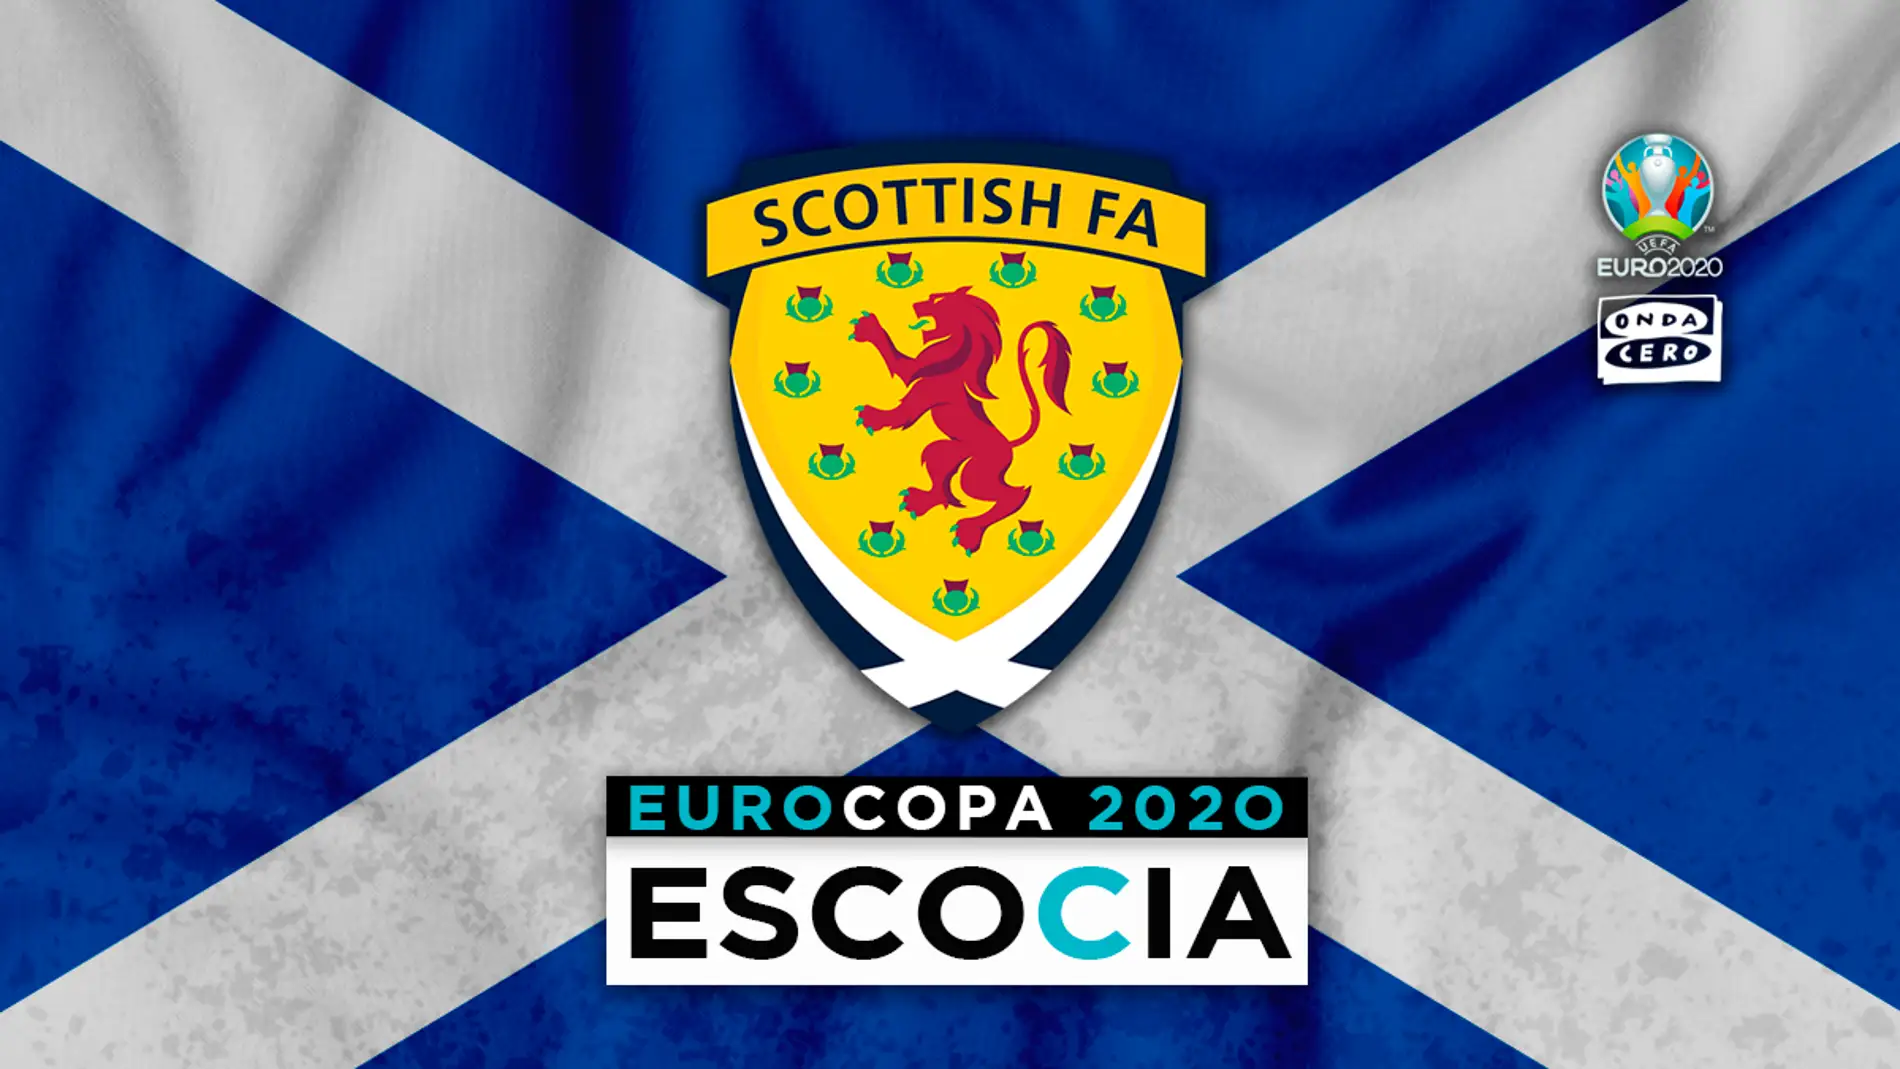 Escocia en la Eurocopa: alineación probable, convocatoria y lista completa de jugadores